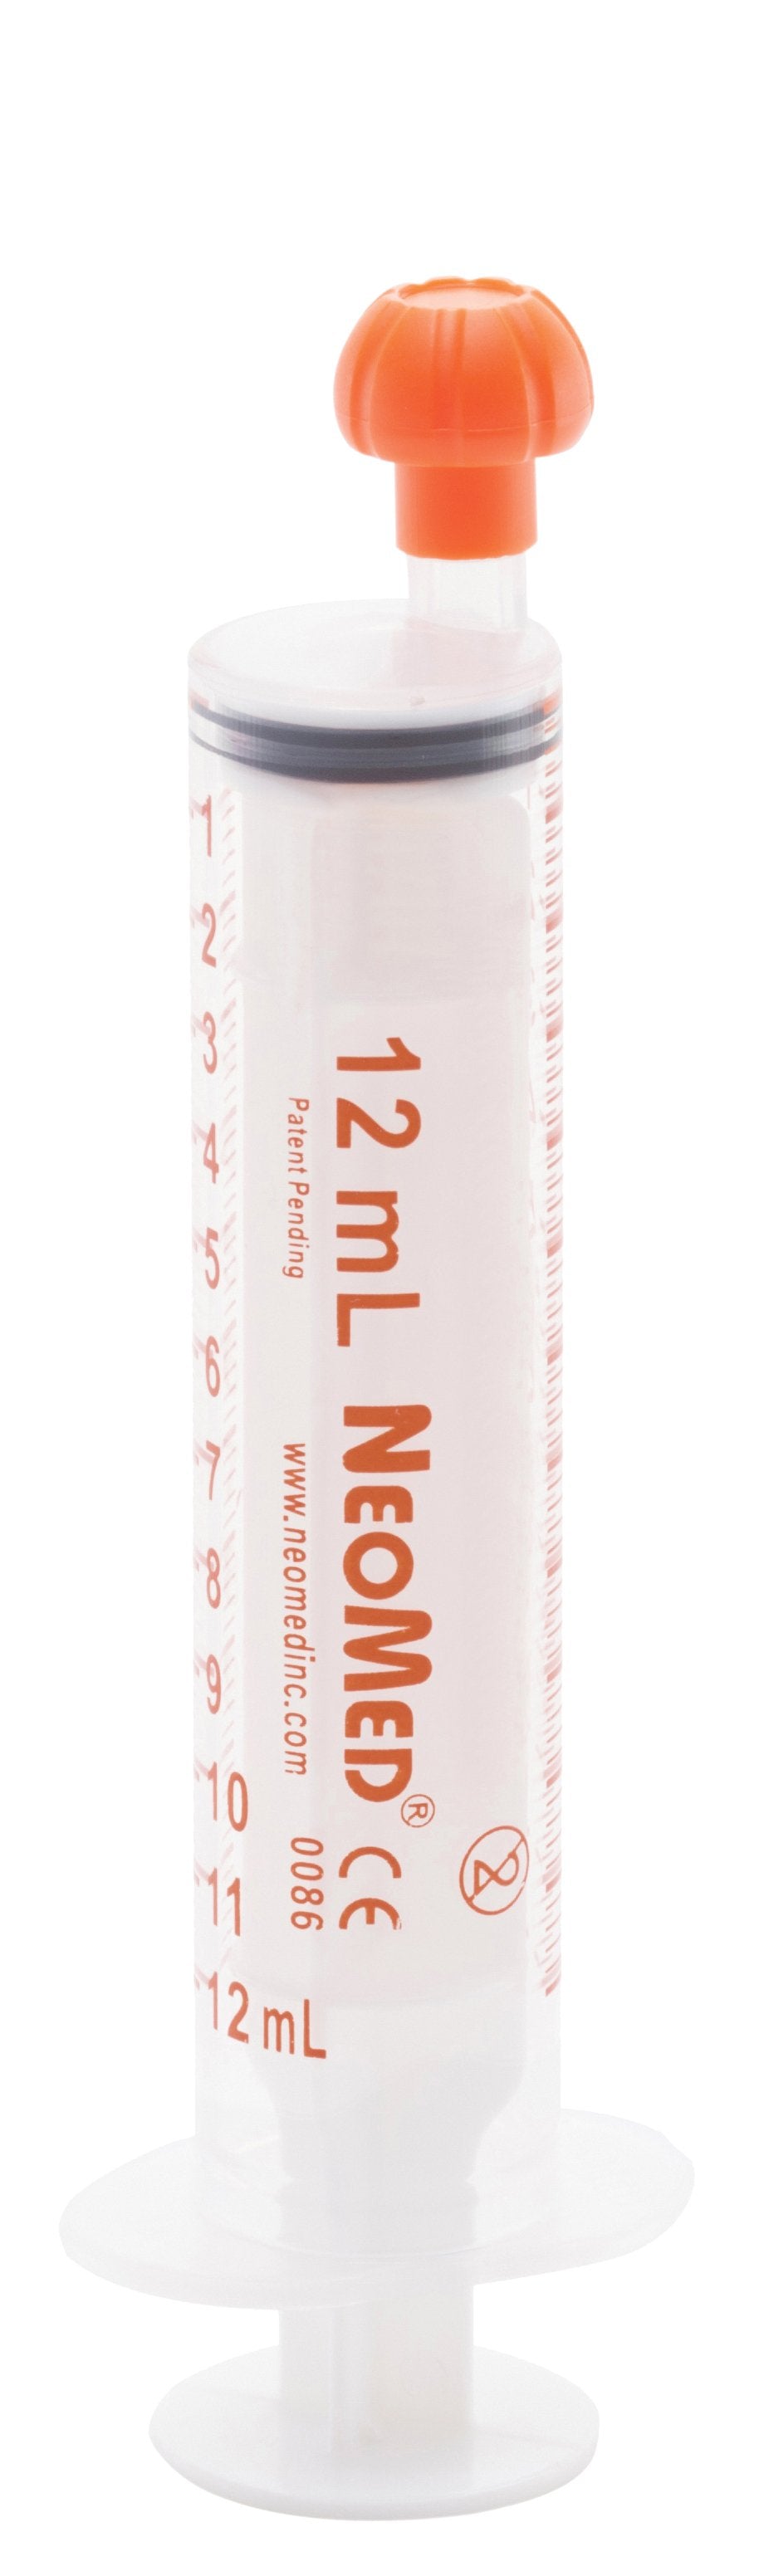 Oral Medication Syringe NeoMed® 12 mL Oral Tip Without Safety